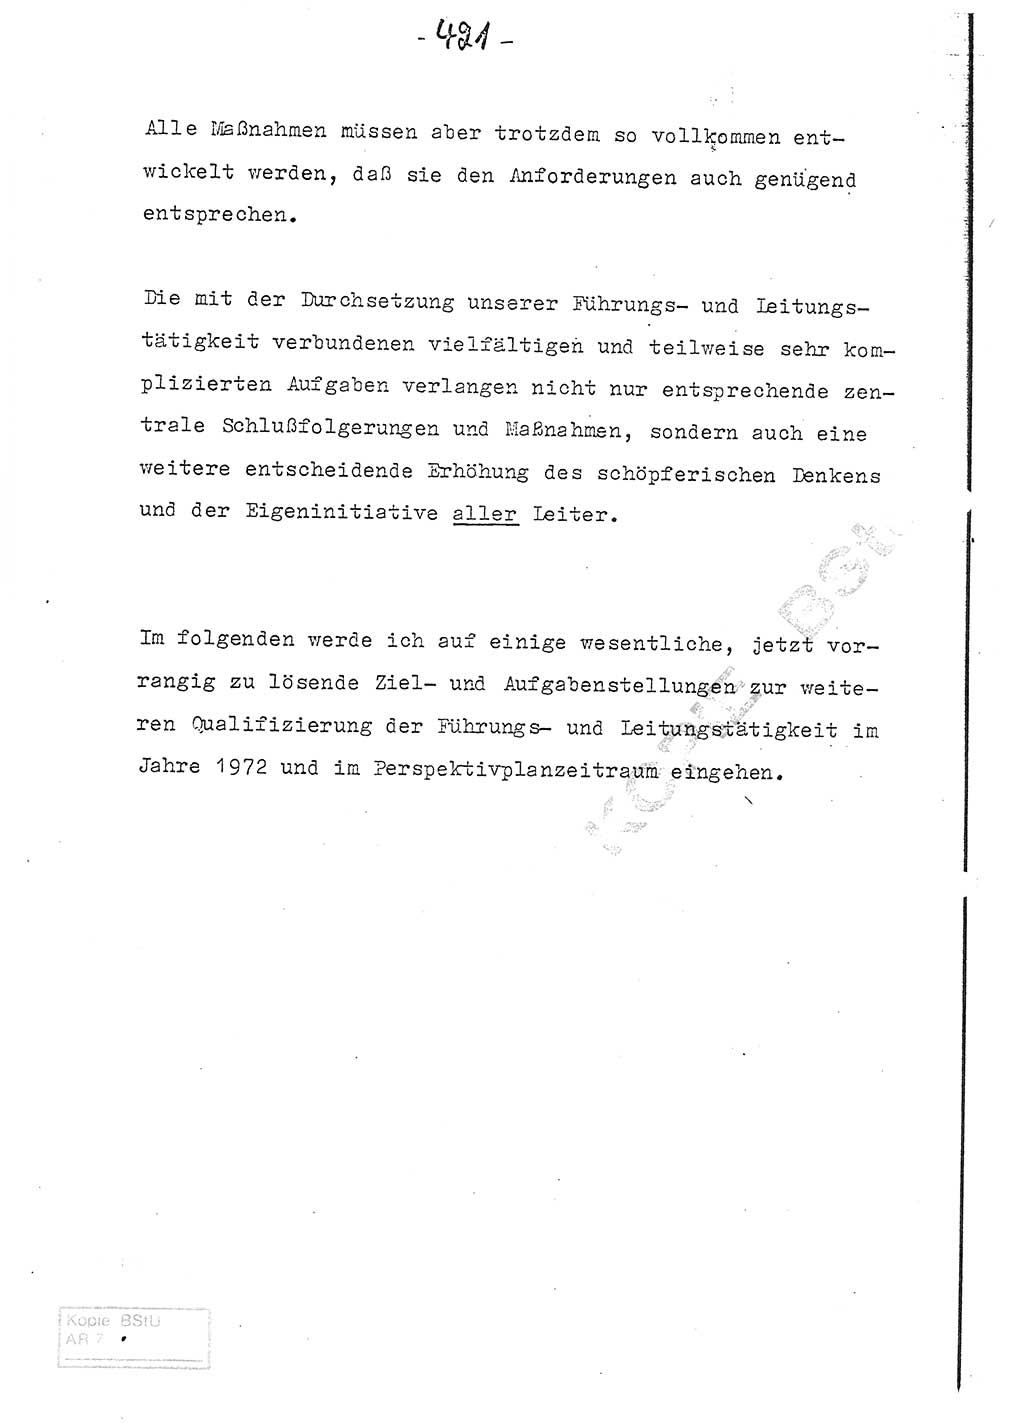 Referat (Entwurf) des Genossen Minister (Generaloberst Erich Mielke) auf der Dienstkonferenz 1972, Ministerium für Staatssicherheit (MfS) [Deutsche Demokratische Republik (DDR)], Der Minister, Geheime Verschlußsache (GVS) 008-150/72, Berlin 25.2.1972, Seite 421 (Ref. Entw. DK MfS DDR Min. GVS 008-150/72 1972, S. 421)